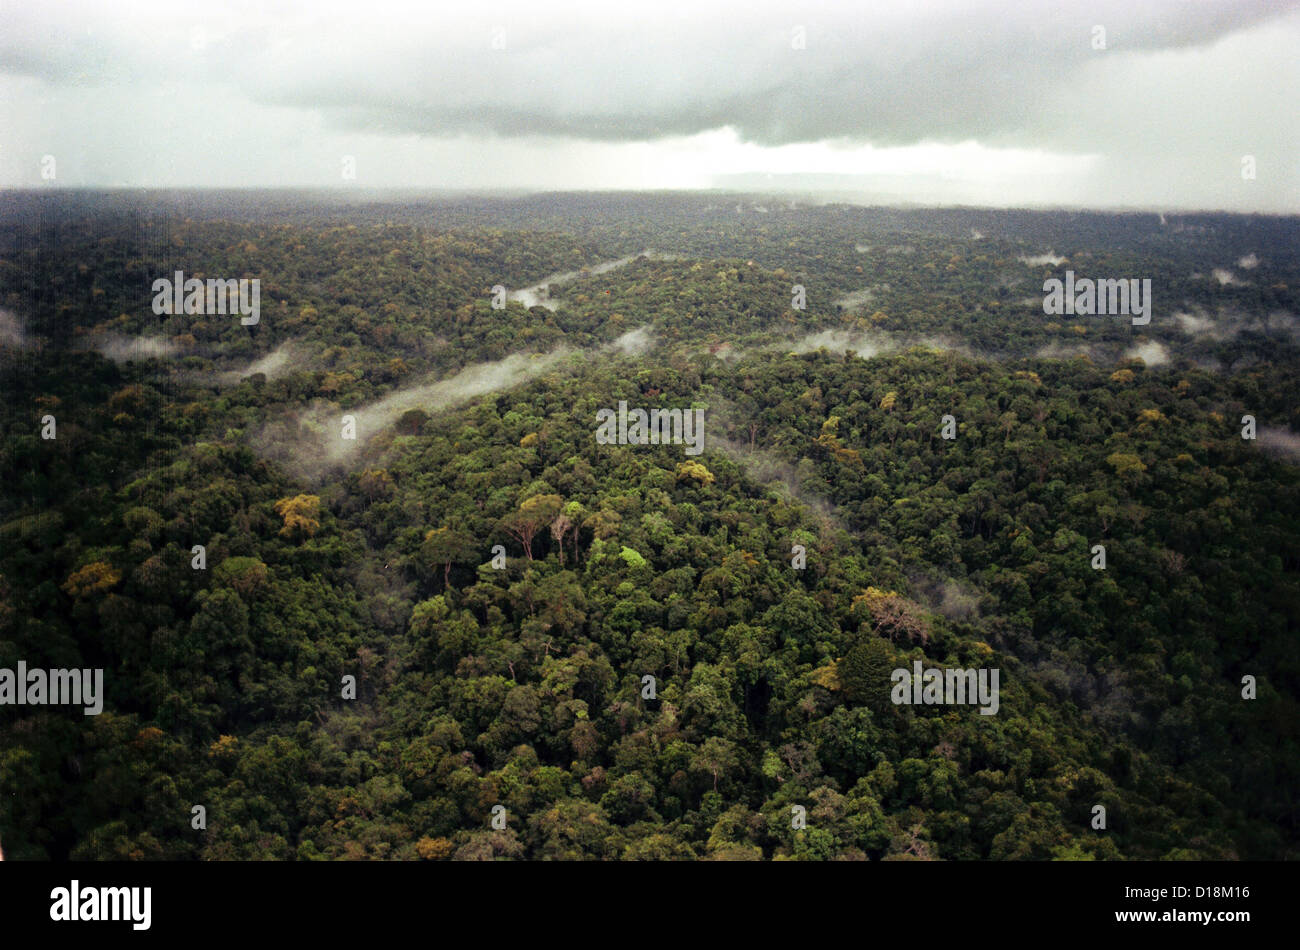 Luftaufnahme von Guyana Dschungel. FBI-Foto während der Untersuchung der Peoples Temple Massenselbstmord. November 1978. Stockfoto